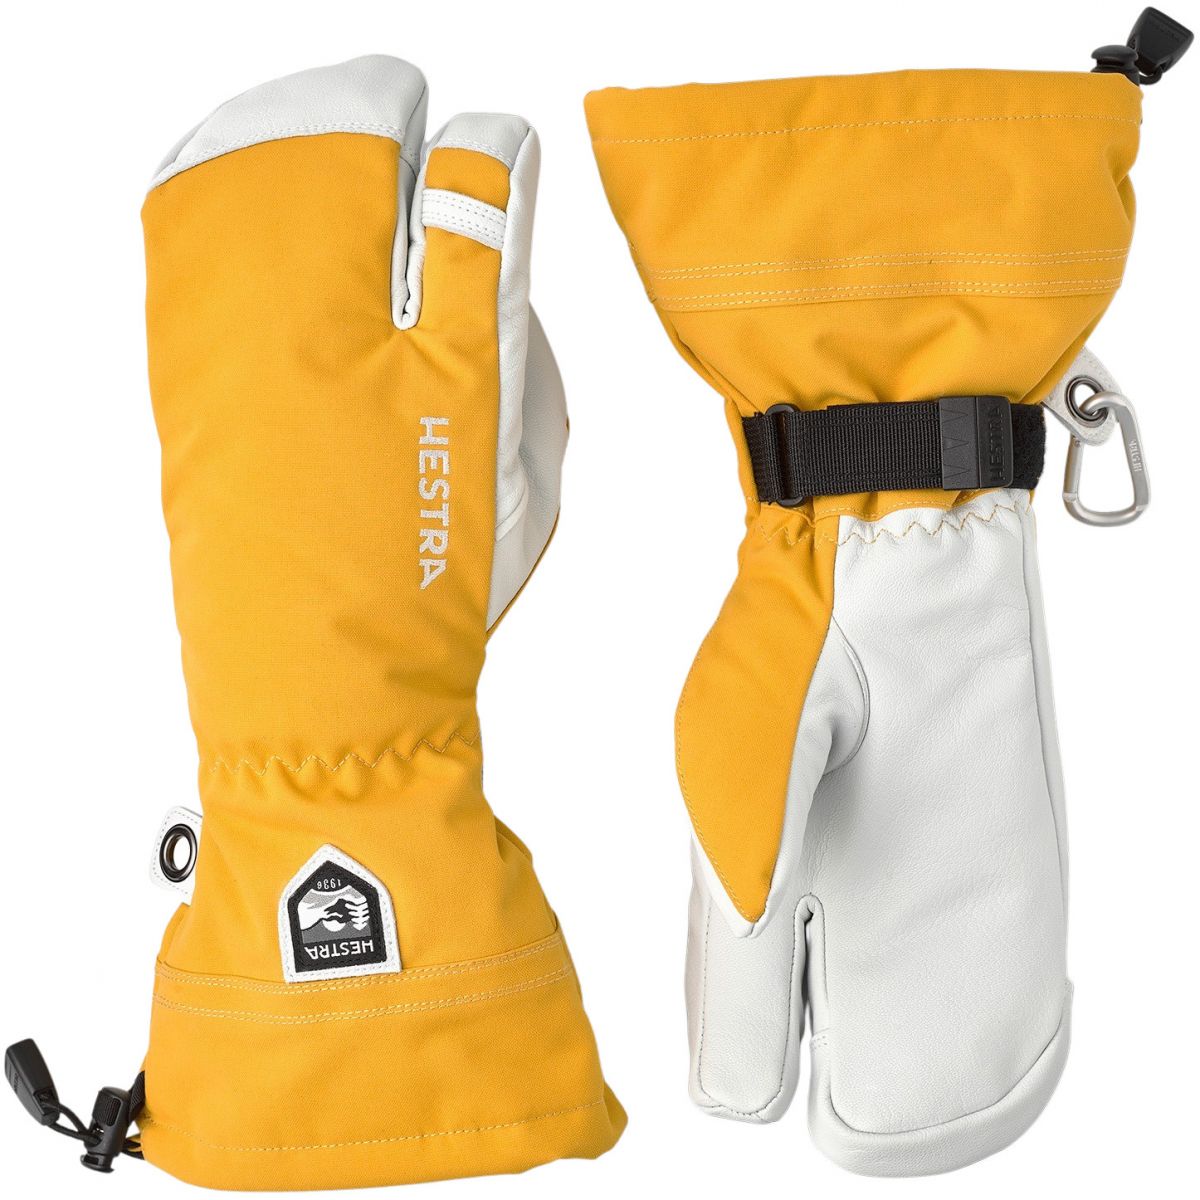 Brug Hestra Army Leather Heli Ski, 3-finger skihandsker, gul til en forbedret oplevelse